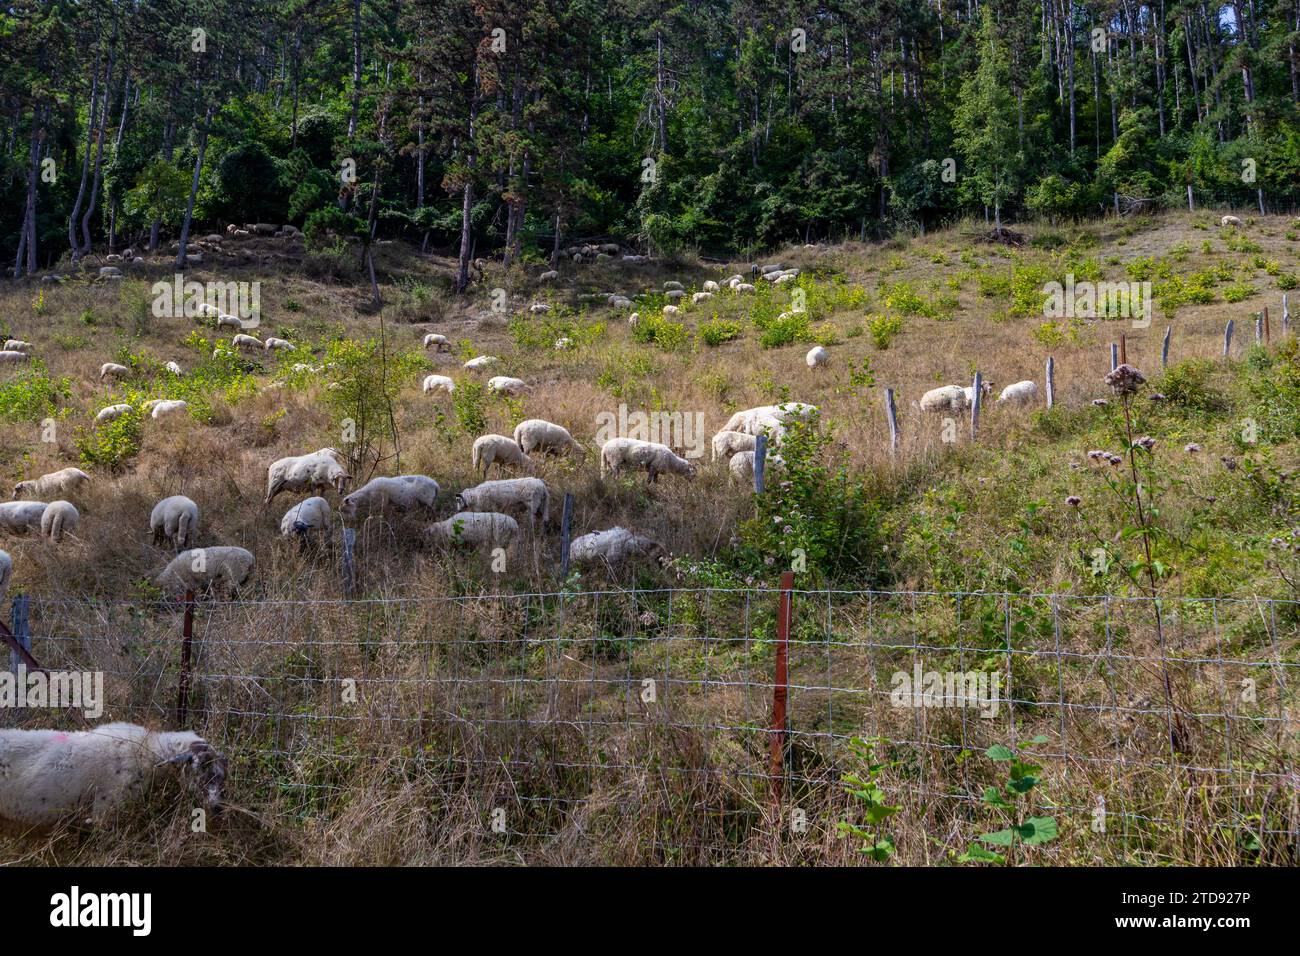 Gregge di pecore bianche che pascolano tranquillamente su erba secca selvatica, vegetazione verde sullo sfondo, accanto alla riserva naturale Thier de Lanaye nella parte belga di Foto Stock